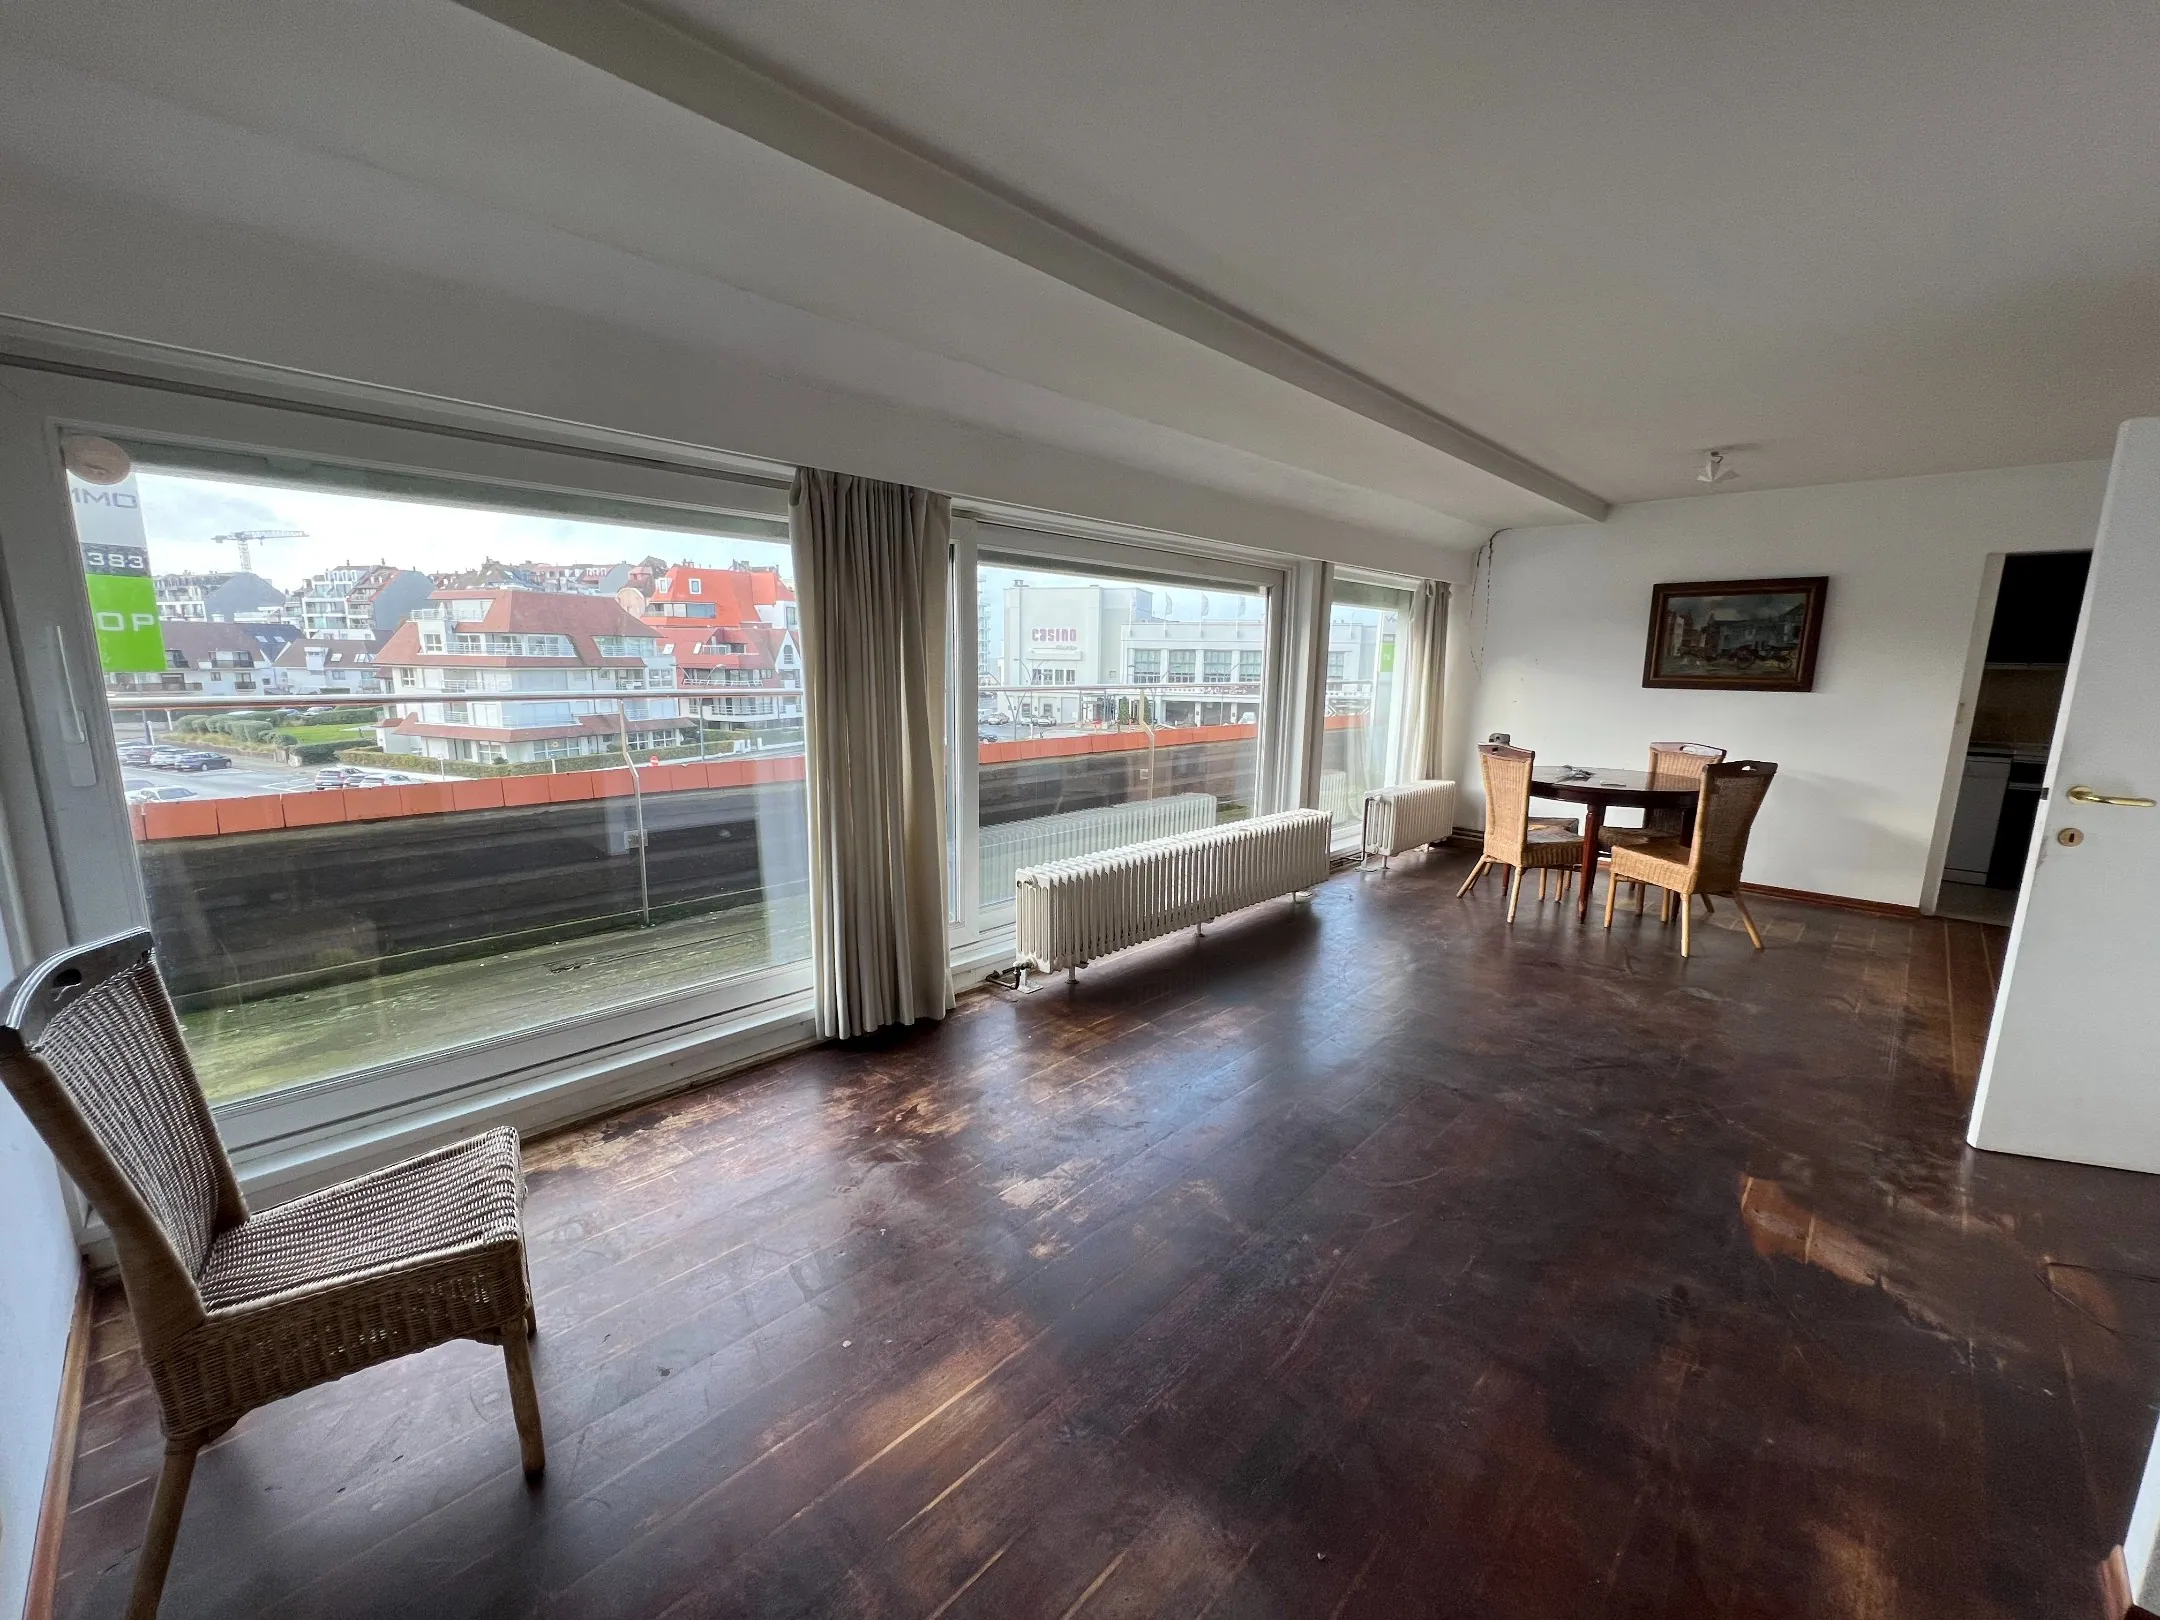 Appartement en duplex à rénover avec vue dégagée et terrasse orientée à l'ouest avec de magnifiques vues panoramiques, situé à proximité du casino de Knokke.